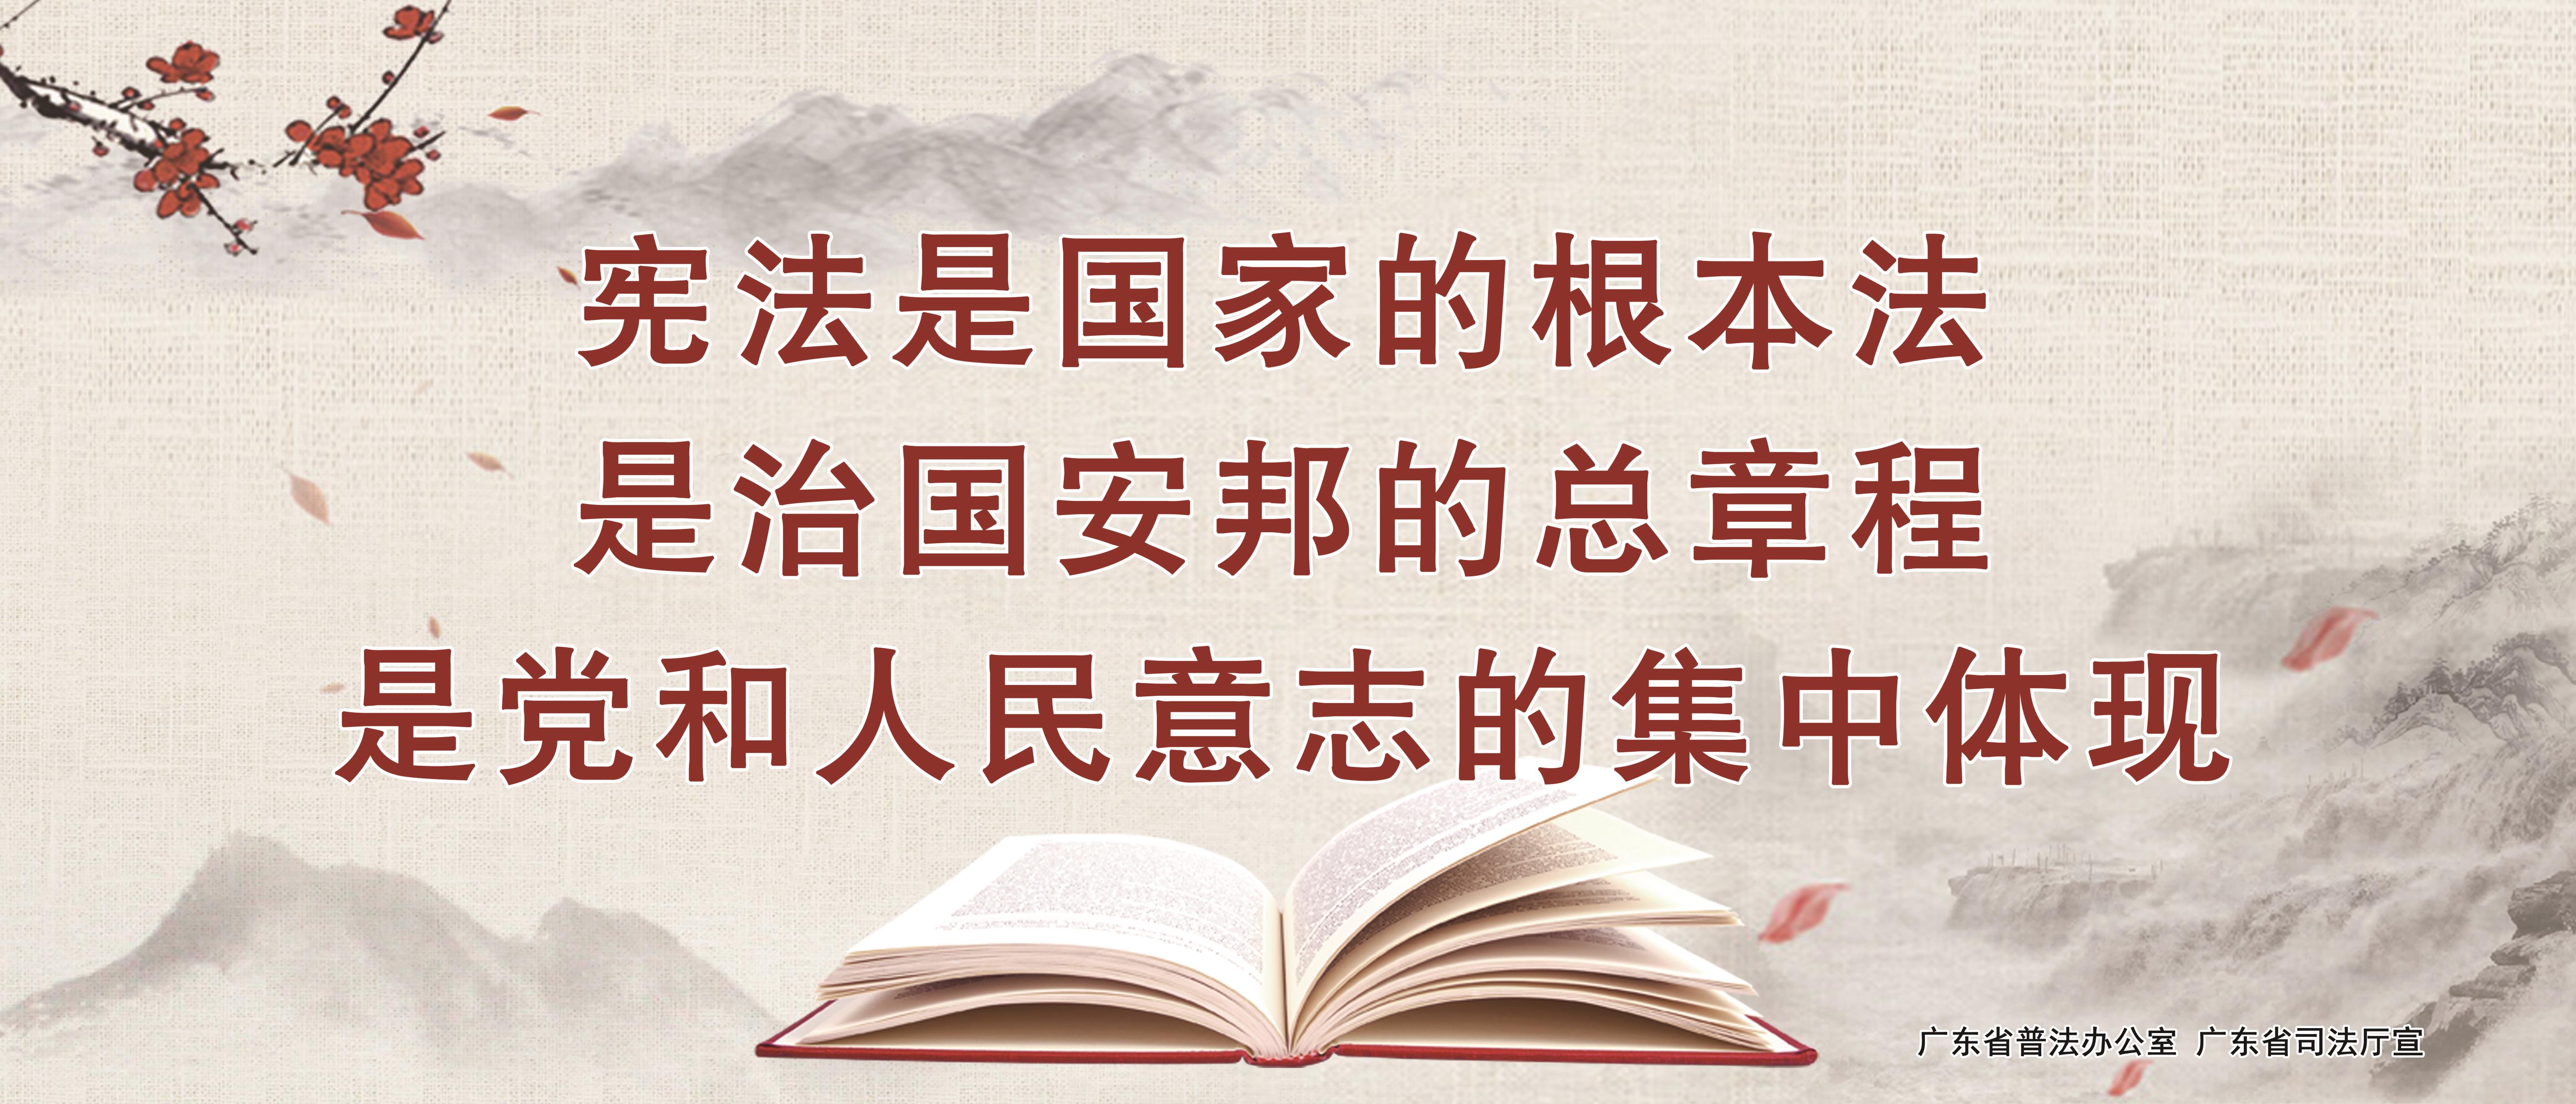 03 中国风5-1 宪法是国家的根本大法是治国安邦的总章程是党和人民意志的集中体现.jpg